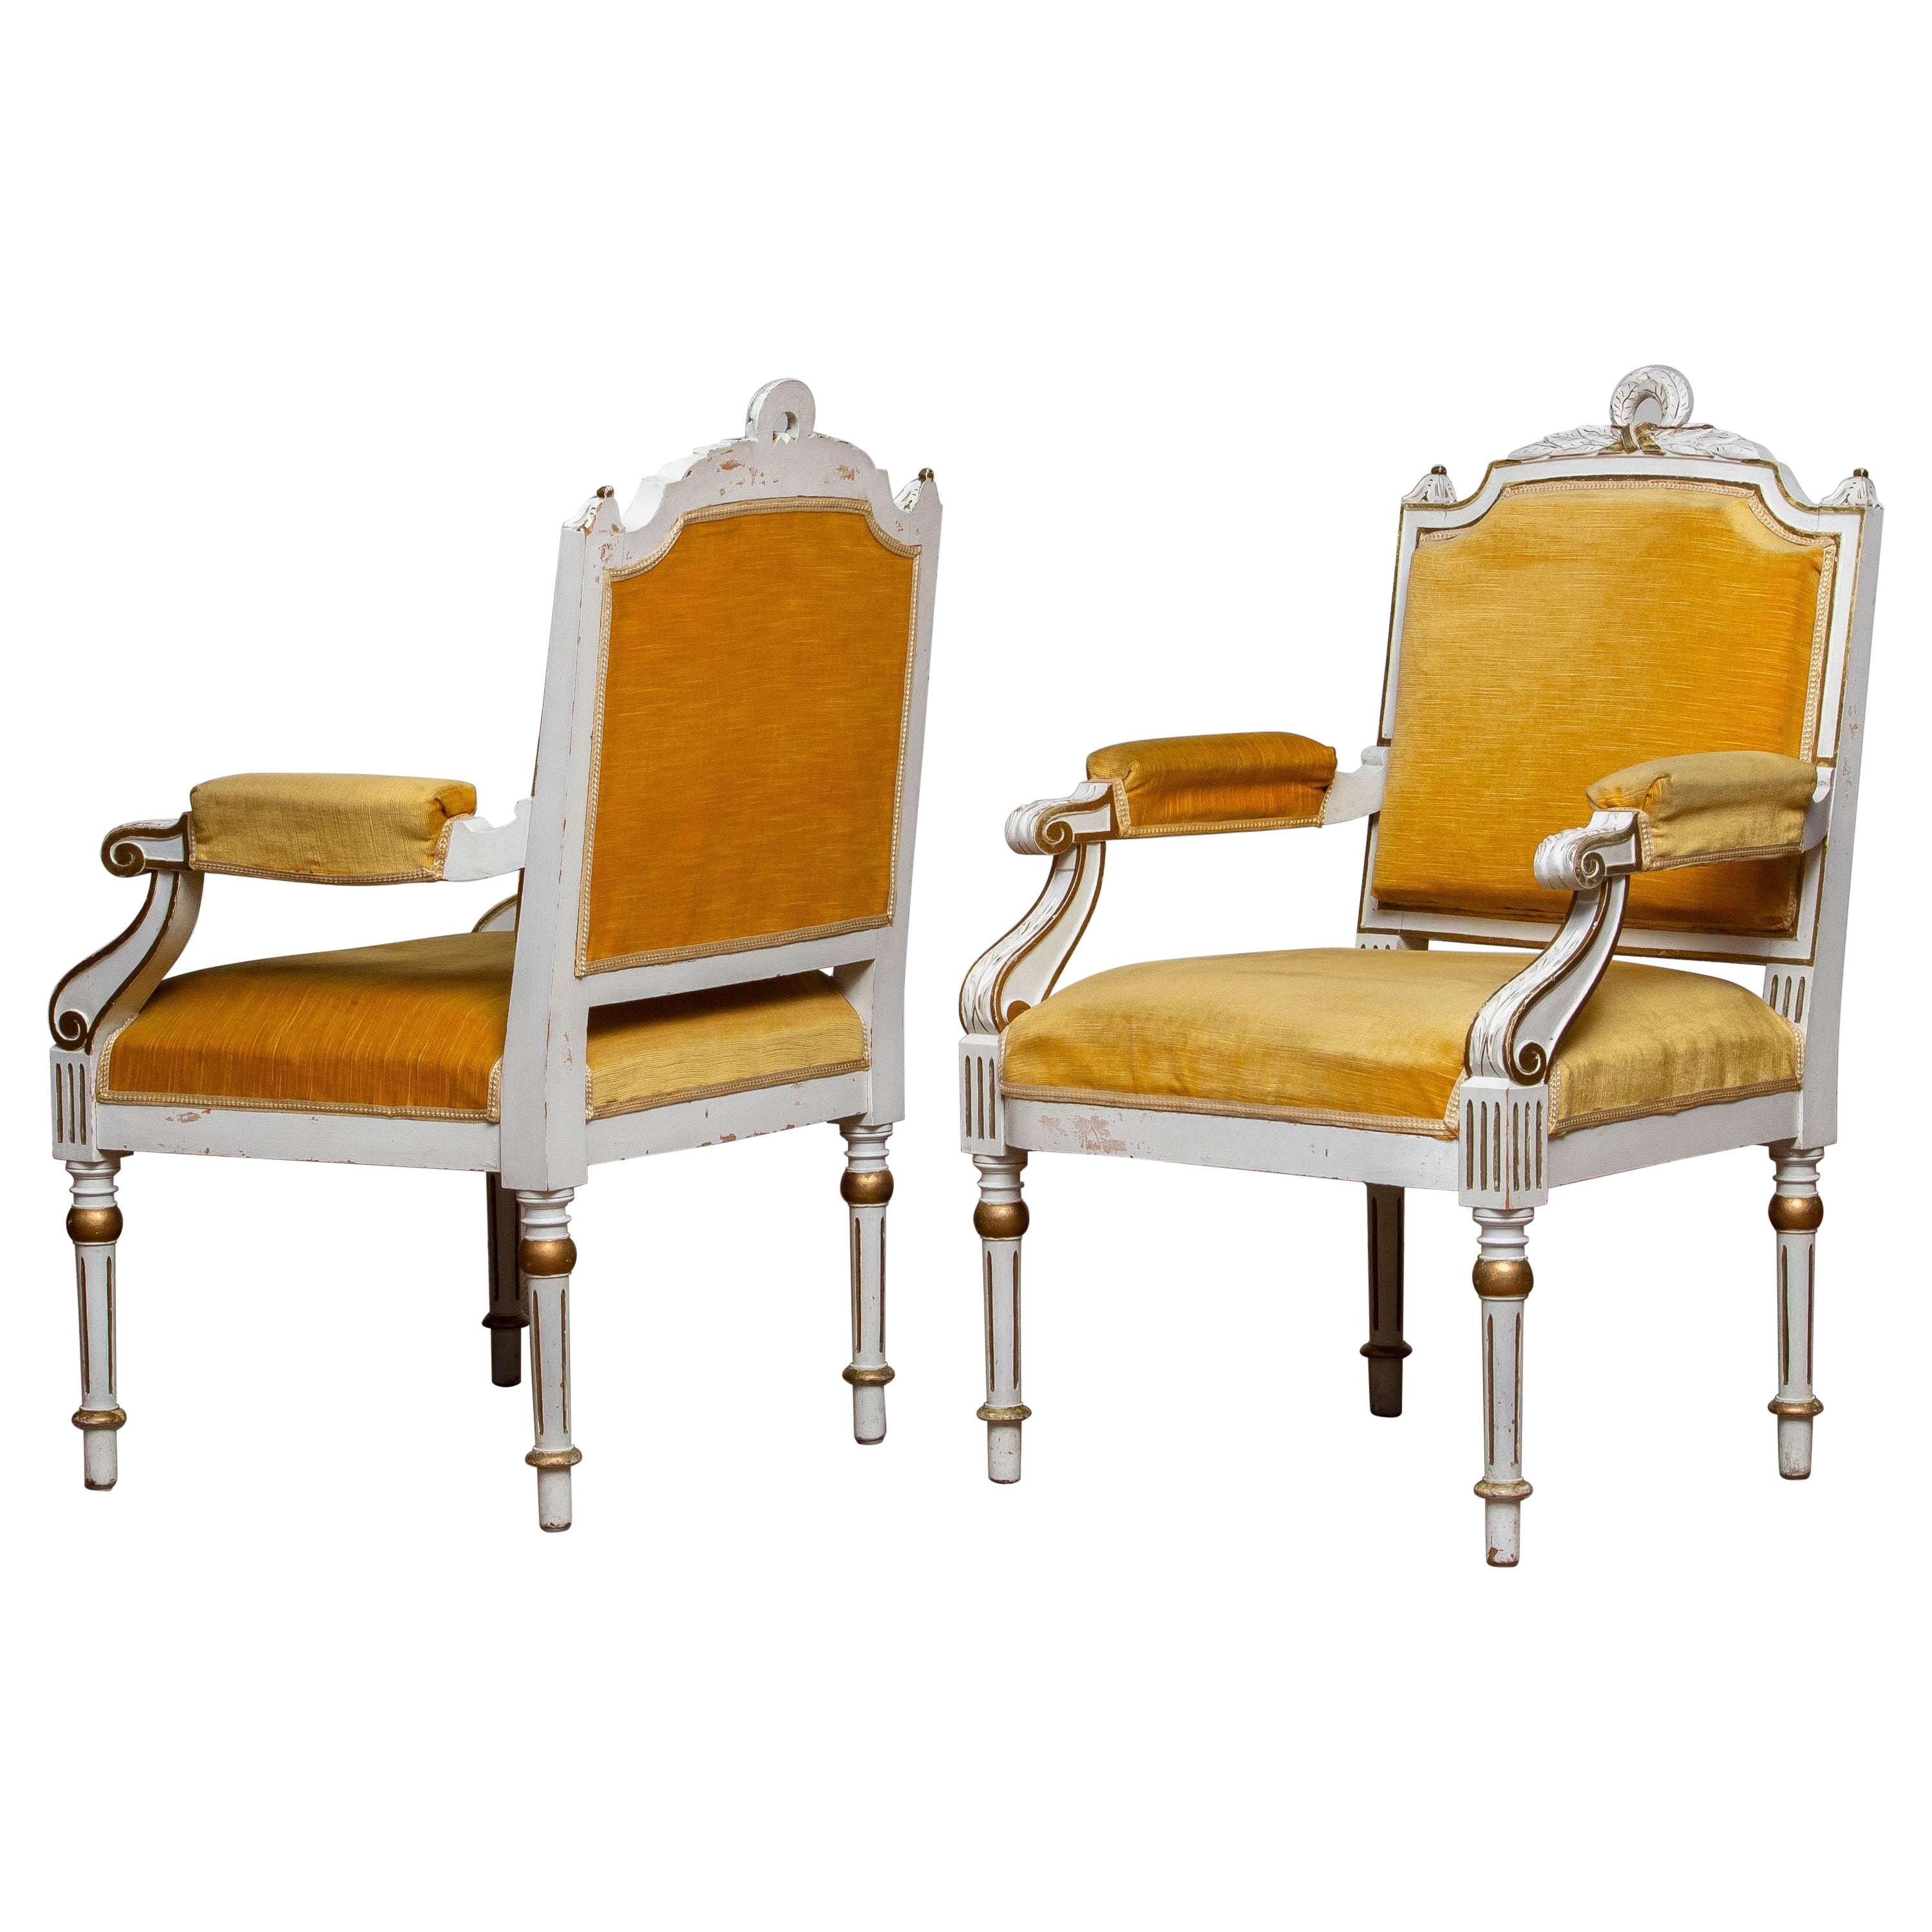 Paire d'anciens fauteuils gustaviens suédois peints en blanc et dorés du 19e siècle